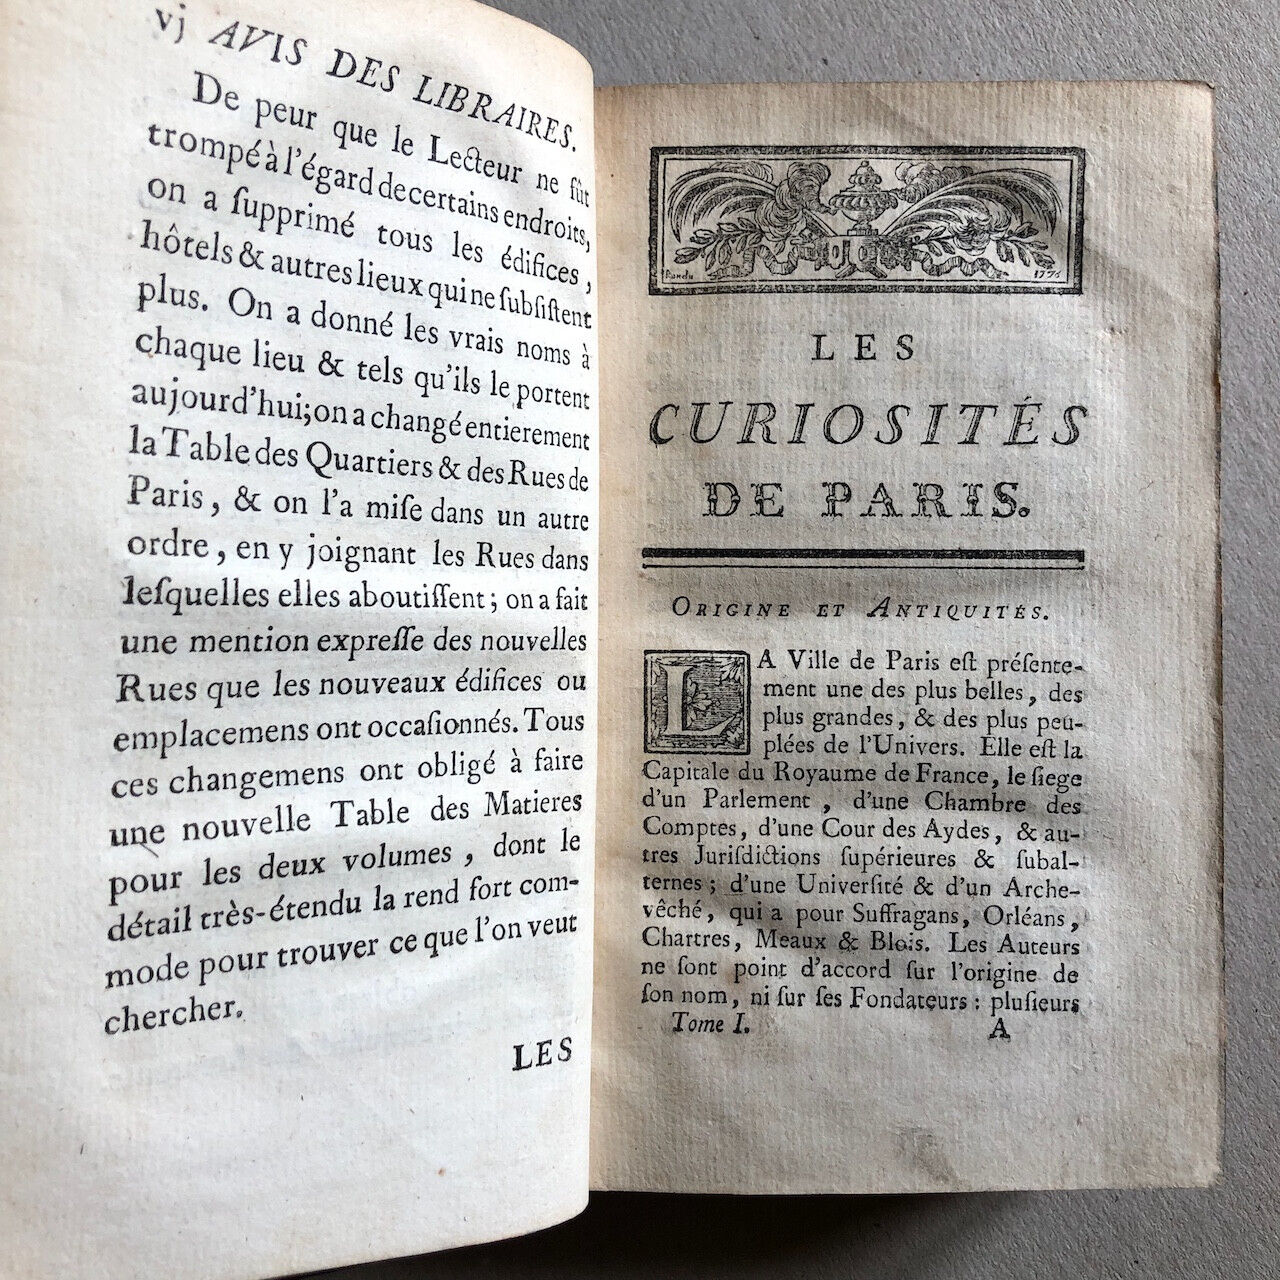 [G.L. Le Rouge] M.L.R. — Curiosités de Paris — Libraires associés — 1778